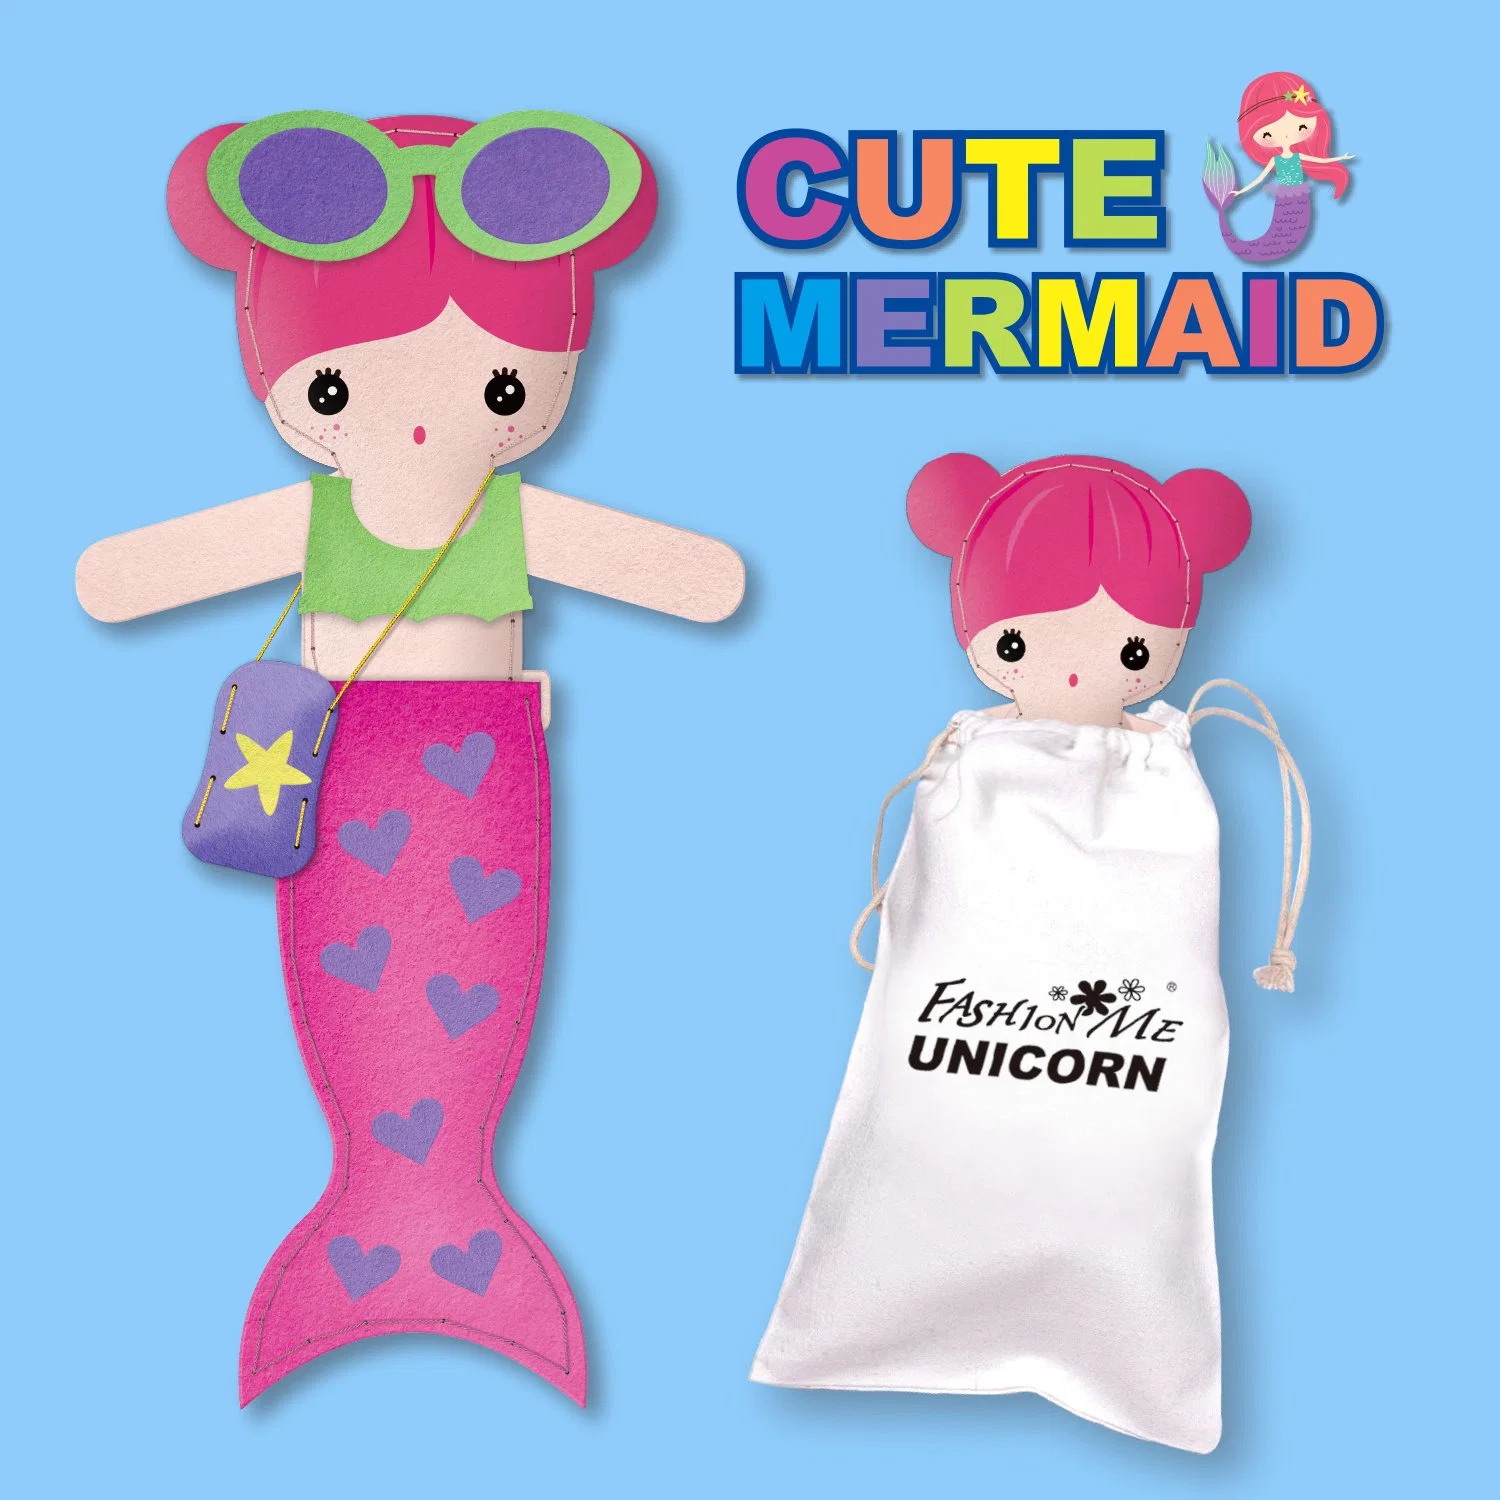 New Mermaid Sewing Kit for Kids Art & Craft Kit DIY Making Gift